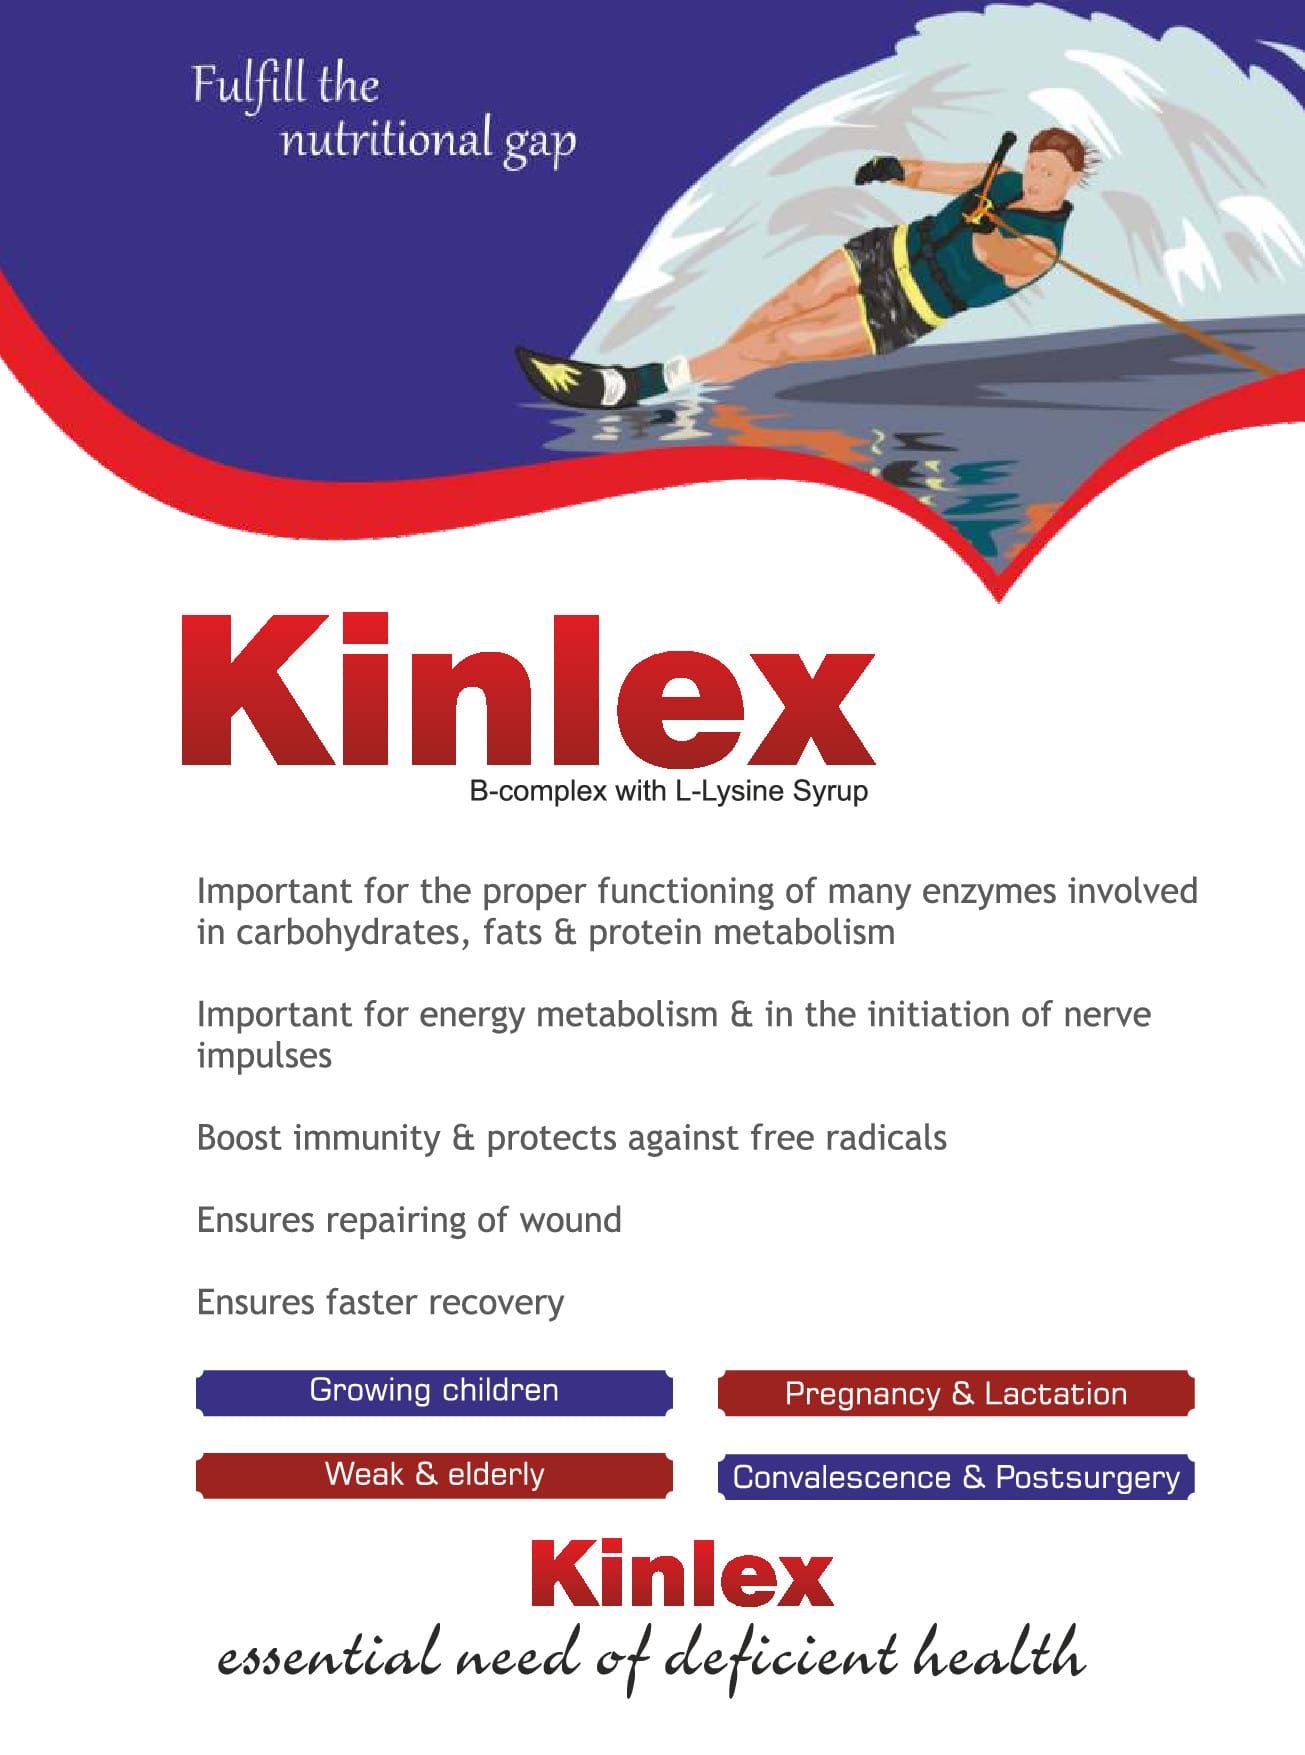 Kinlex